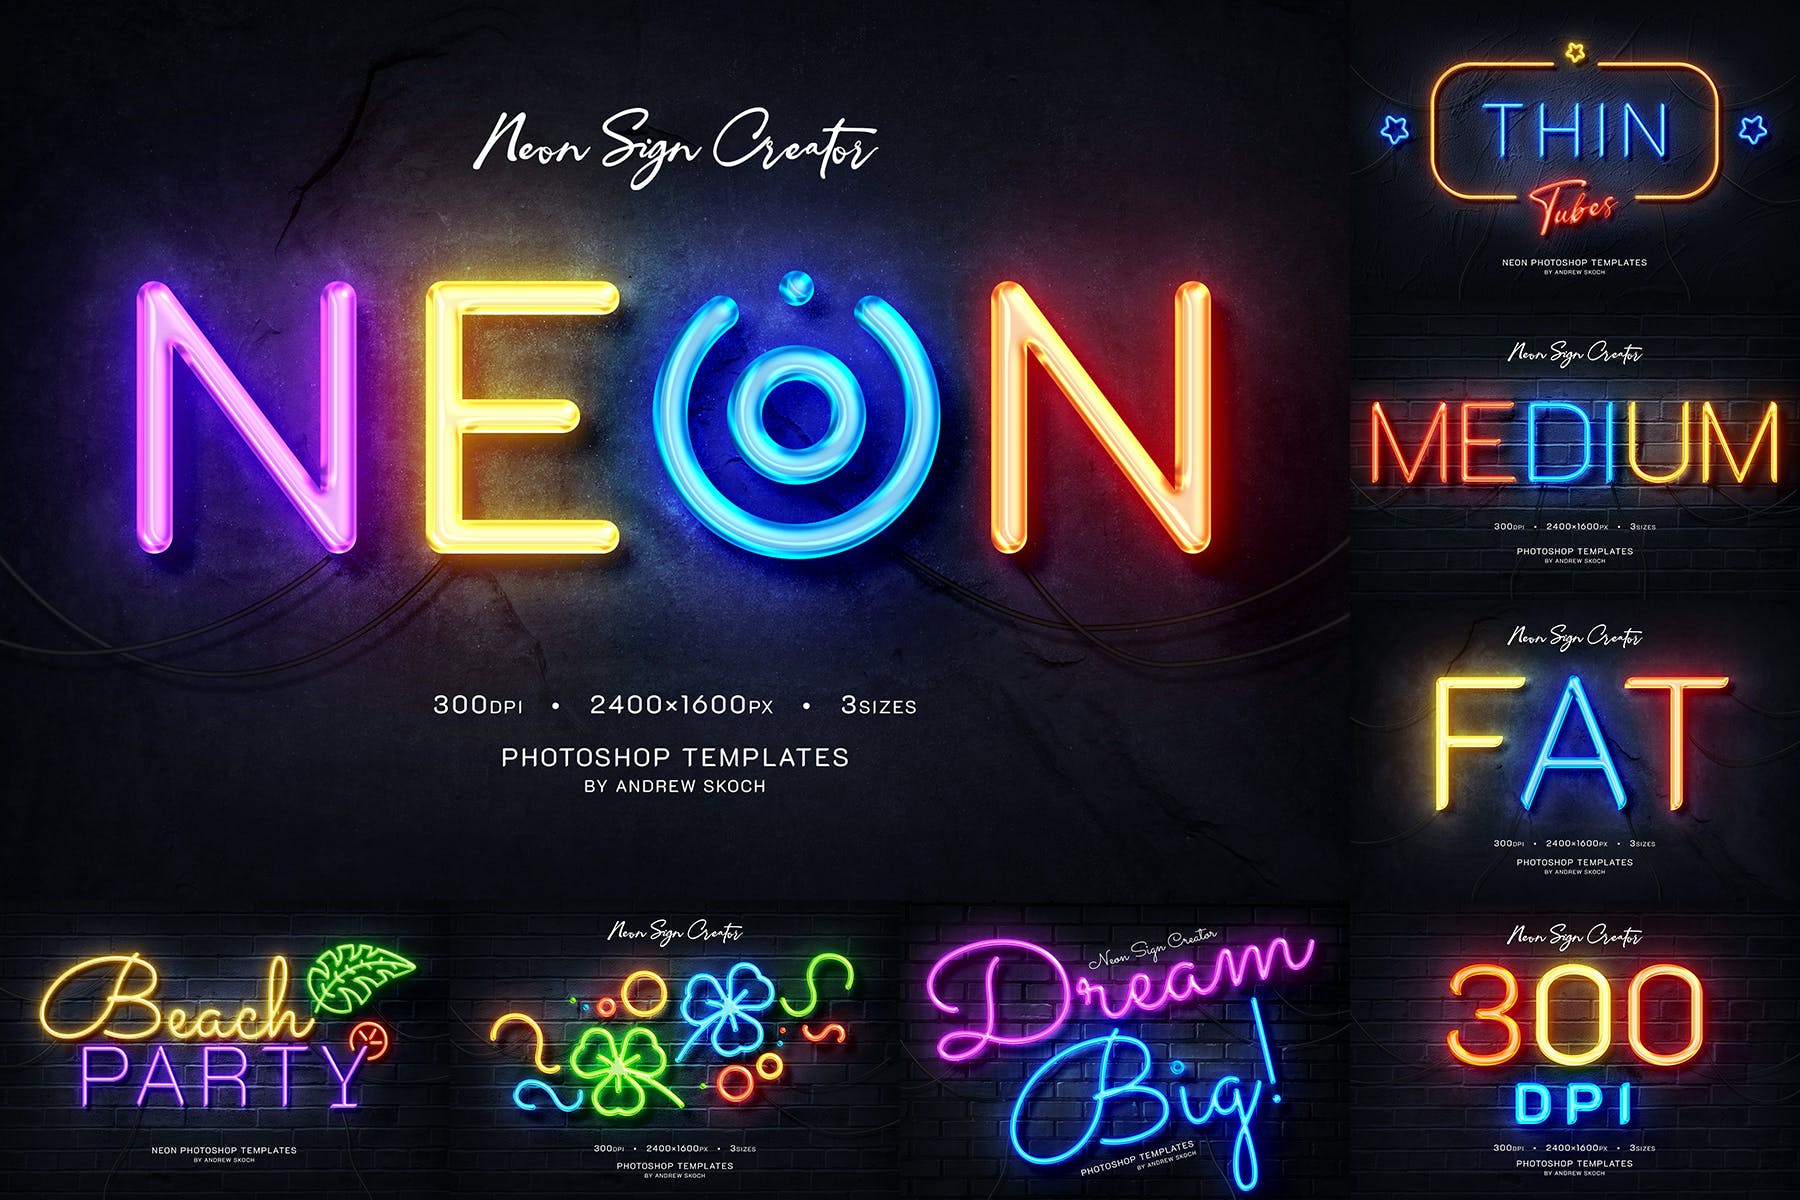 霓虹灯徽标Logo/文字效果图展示样机图层样式模板 Neon Logo/Text Mockups设计素材模板